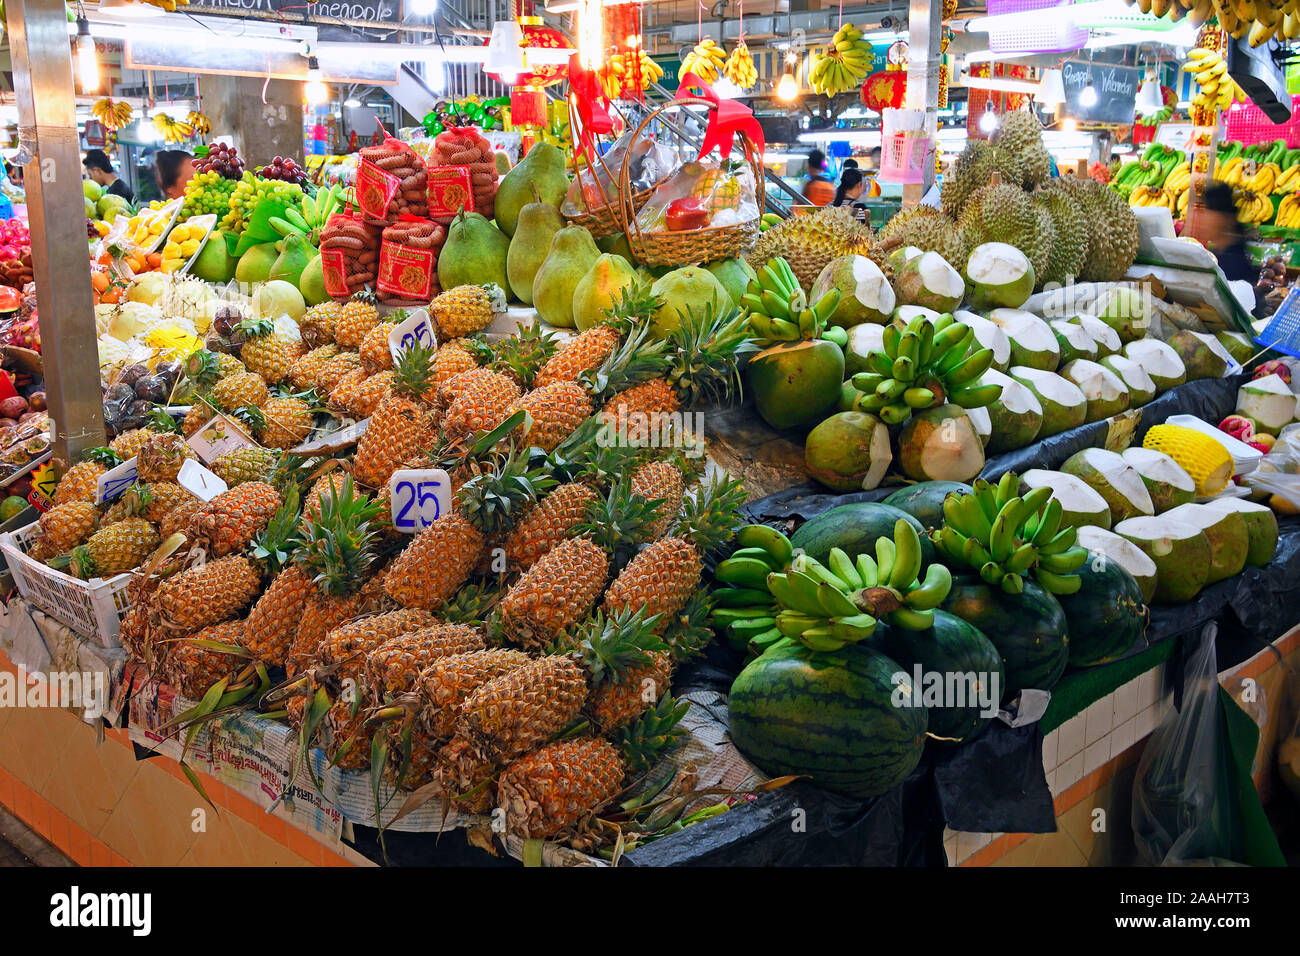 Typische Stände mit riesiger Auswahl un frischem Obst und Gemüse auf dem Banzaan mercato fresco, Patong Beach, Phuket, Tailandia Foto Stock